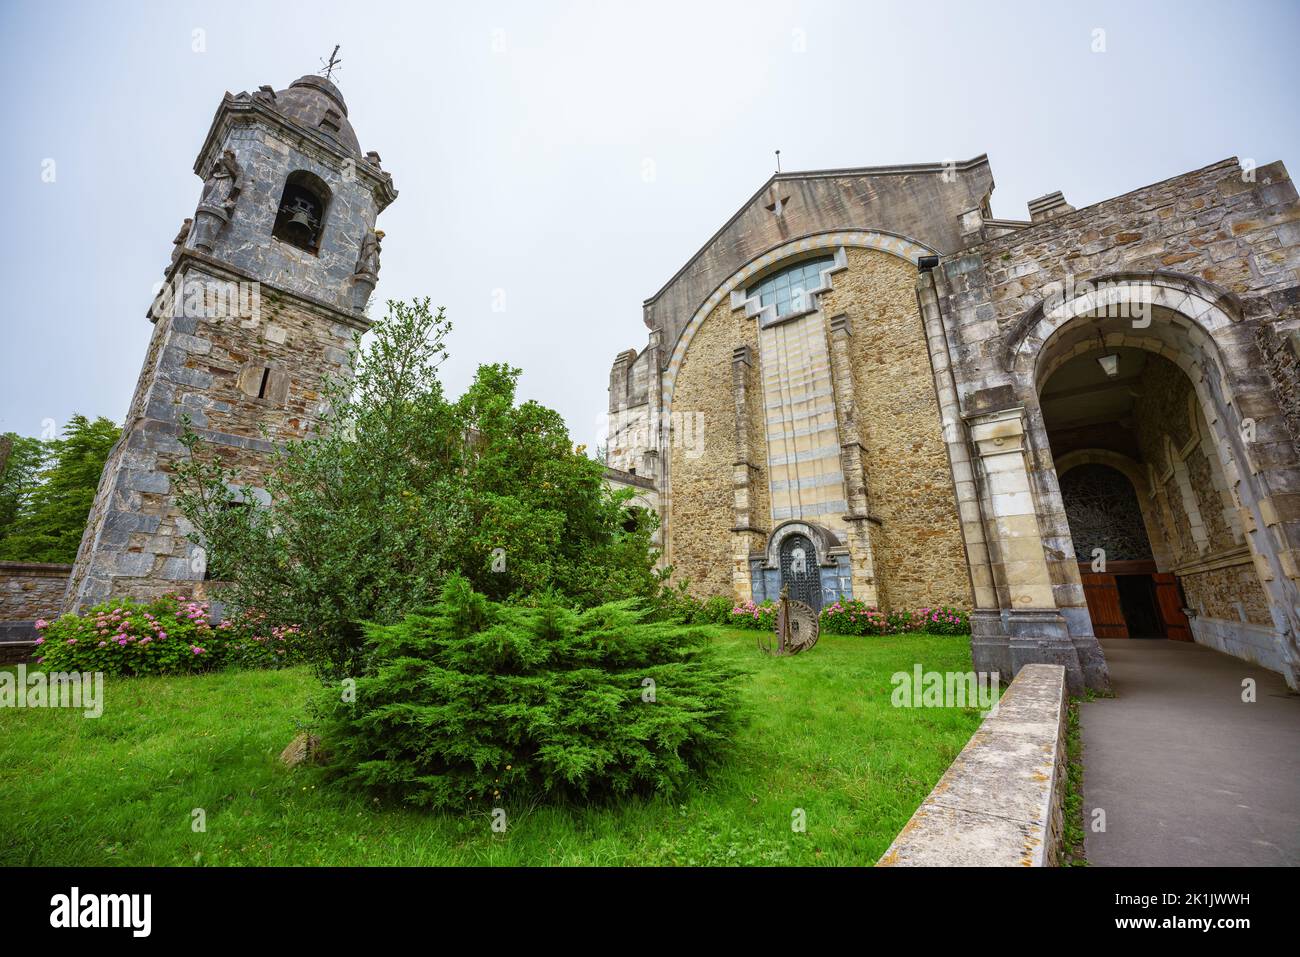 Vue de face du sanctuaire d'Urkiola à Bizkaia, Espagne Banque D'Images